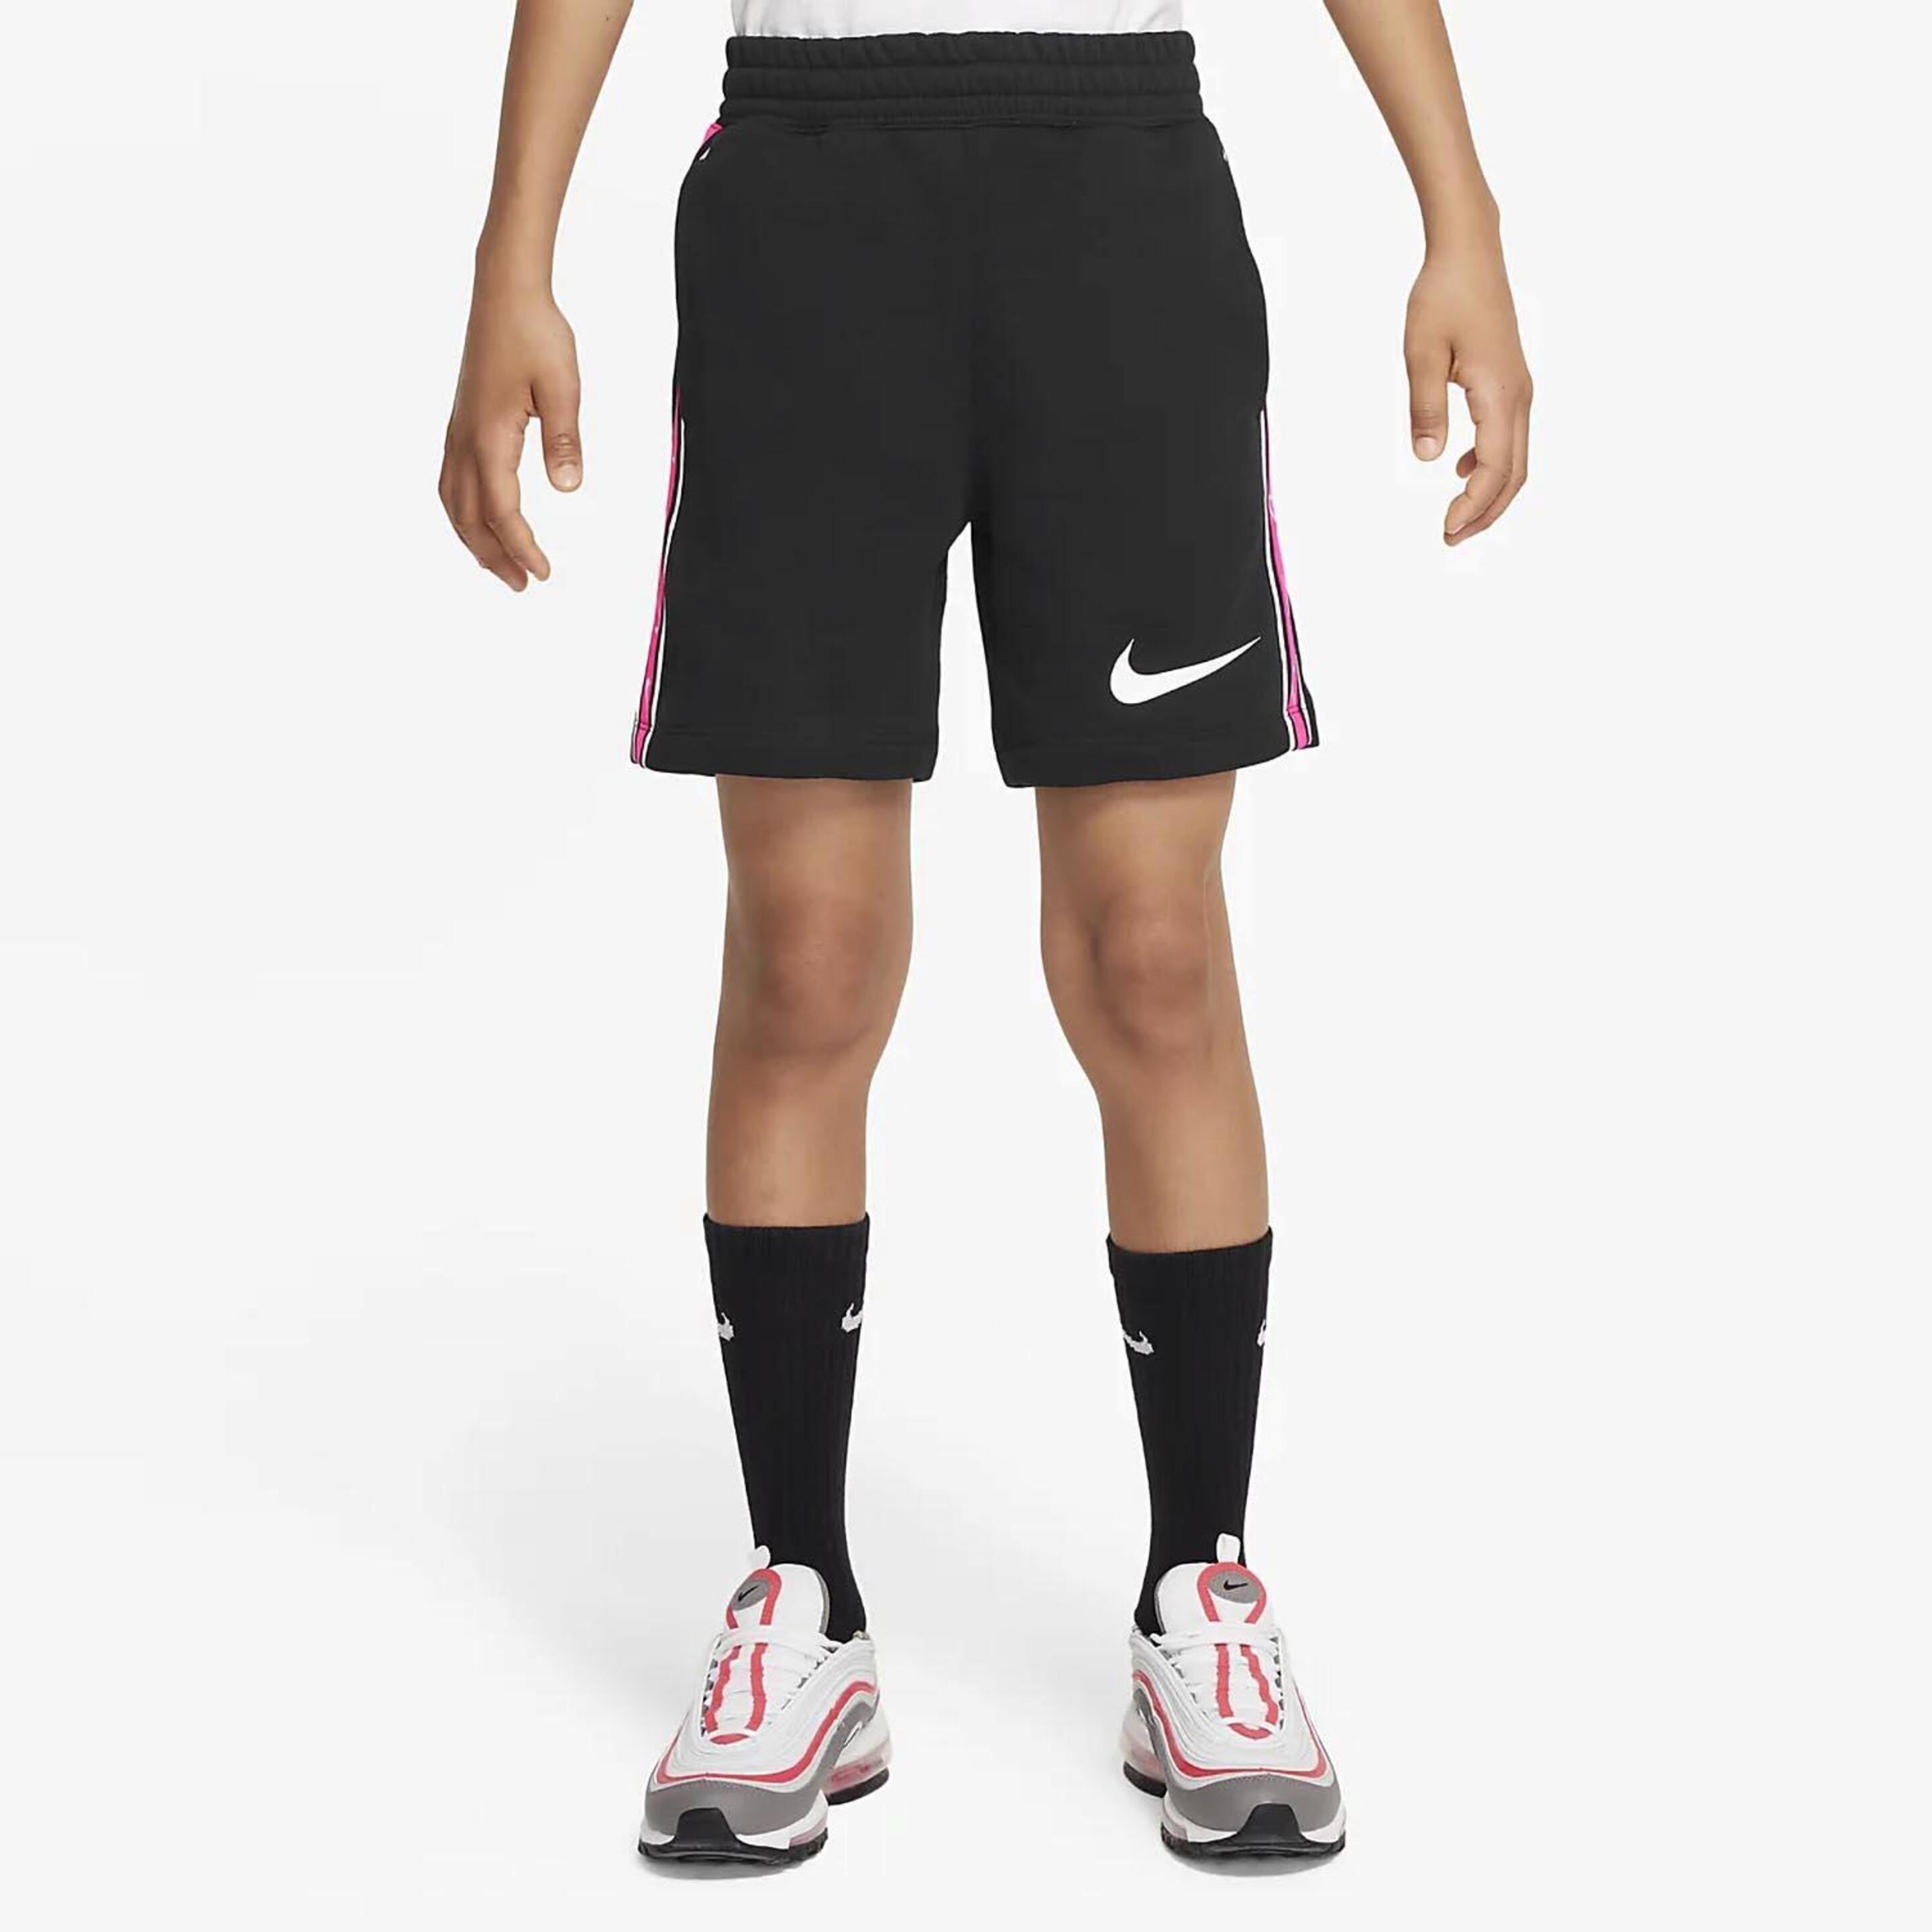 Pantalón Nike - negro - Bermuda Niño